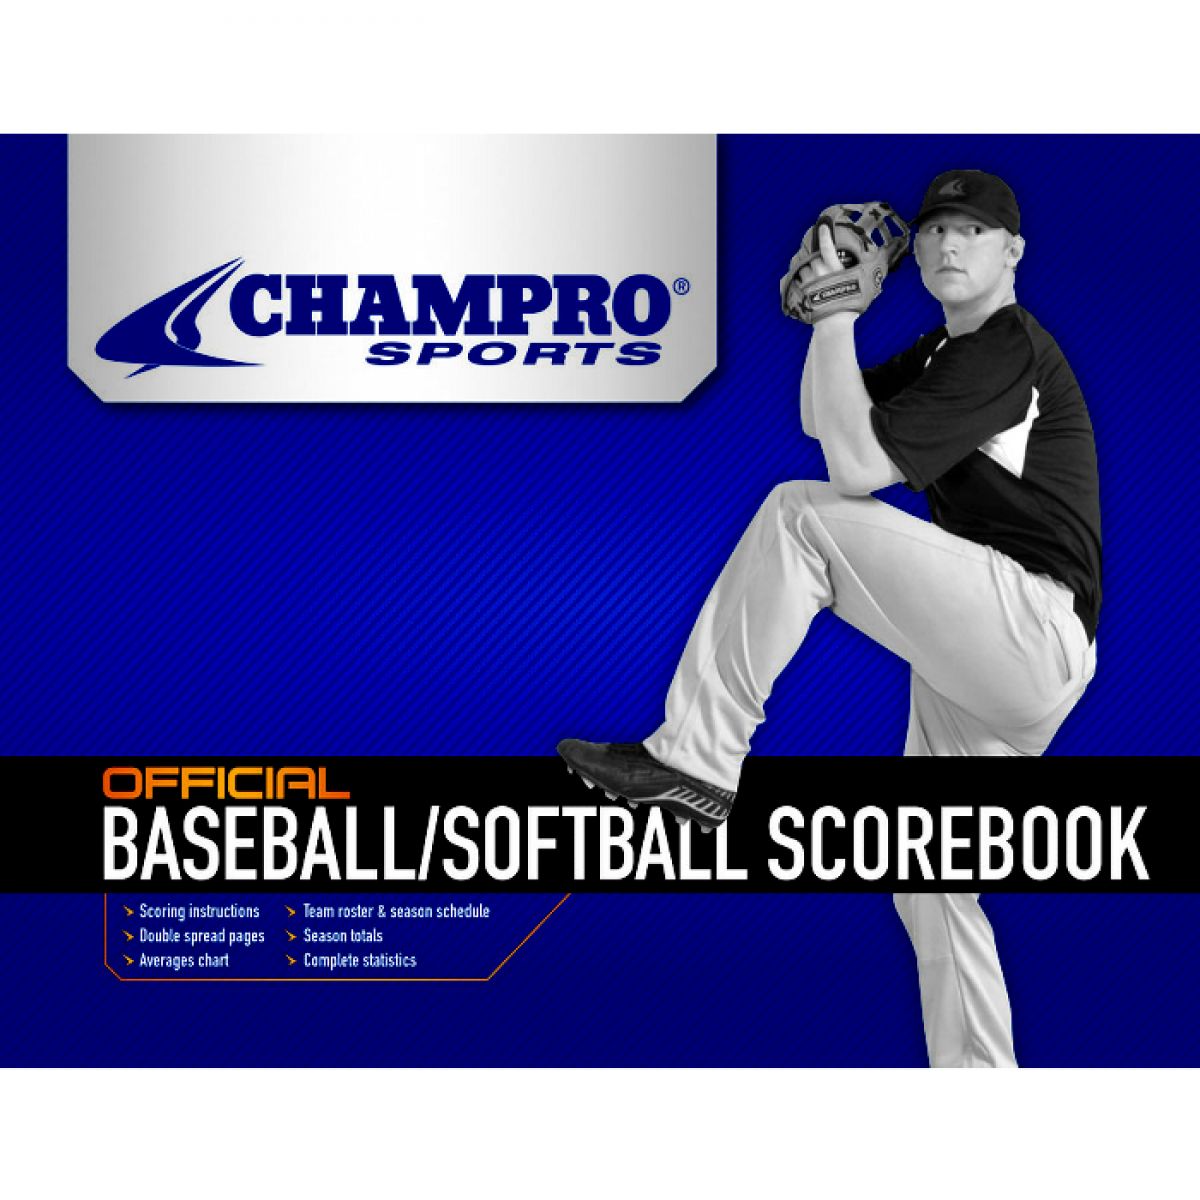 Champro Baseball/Softball Scorebook - image 2 of 2